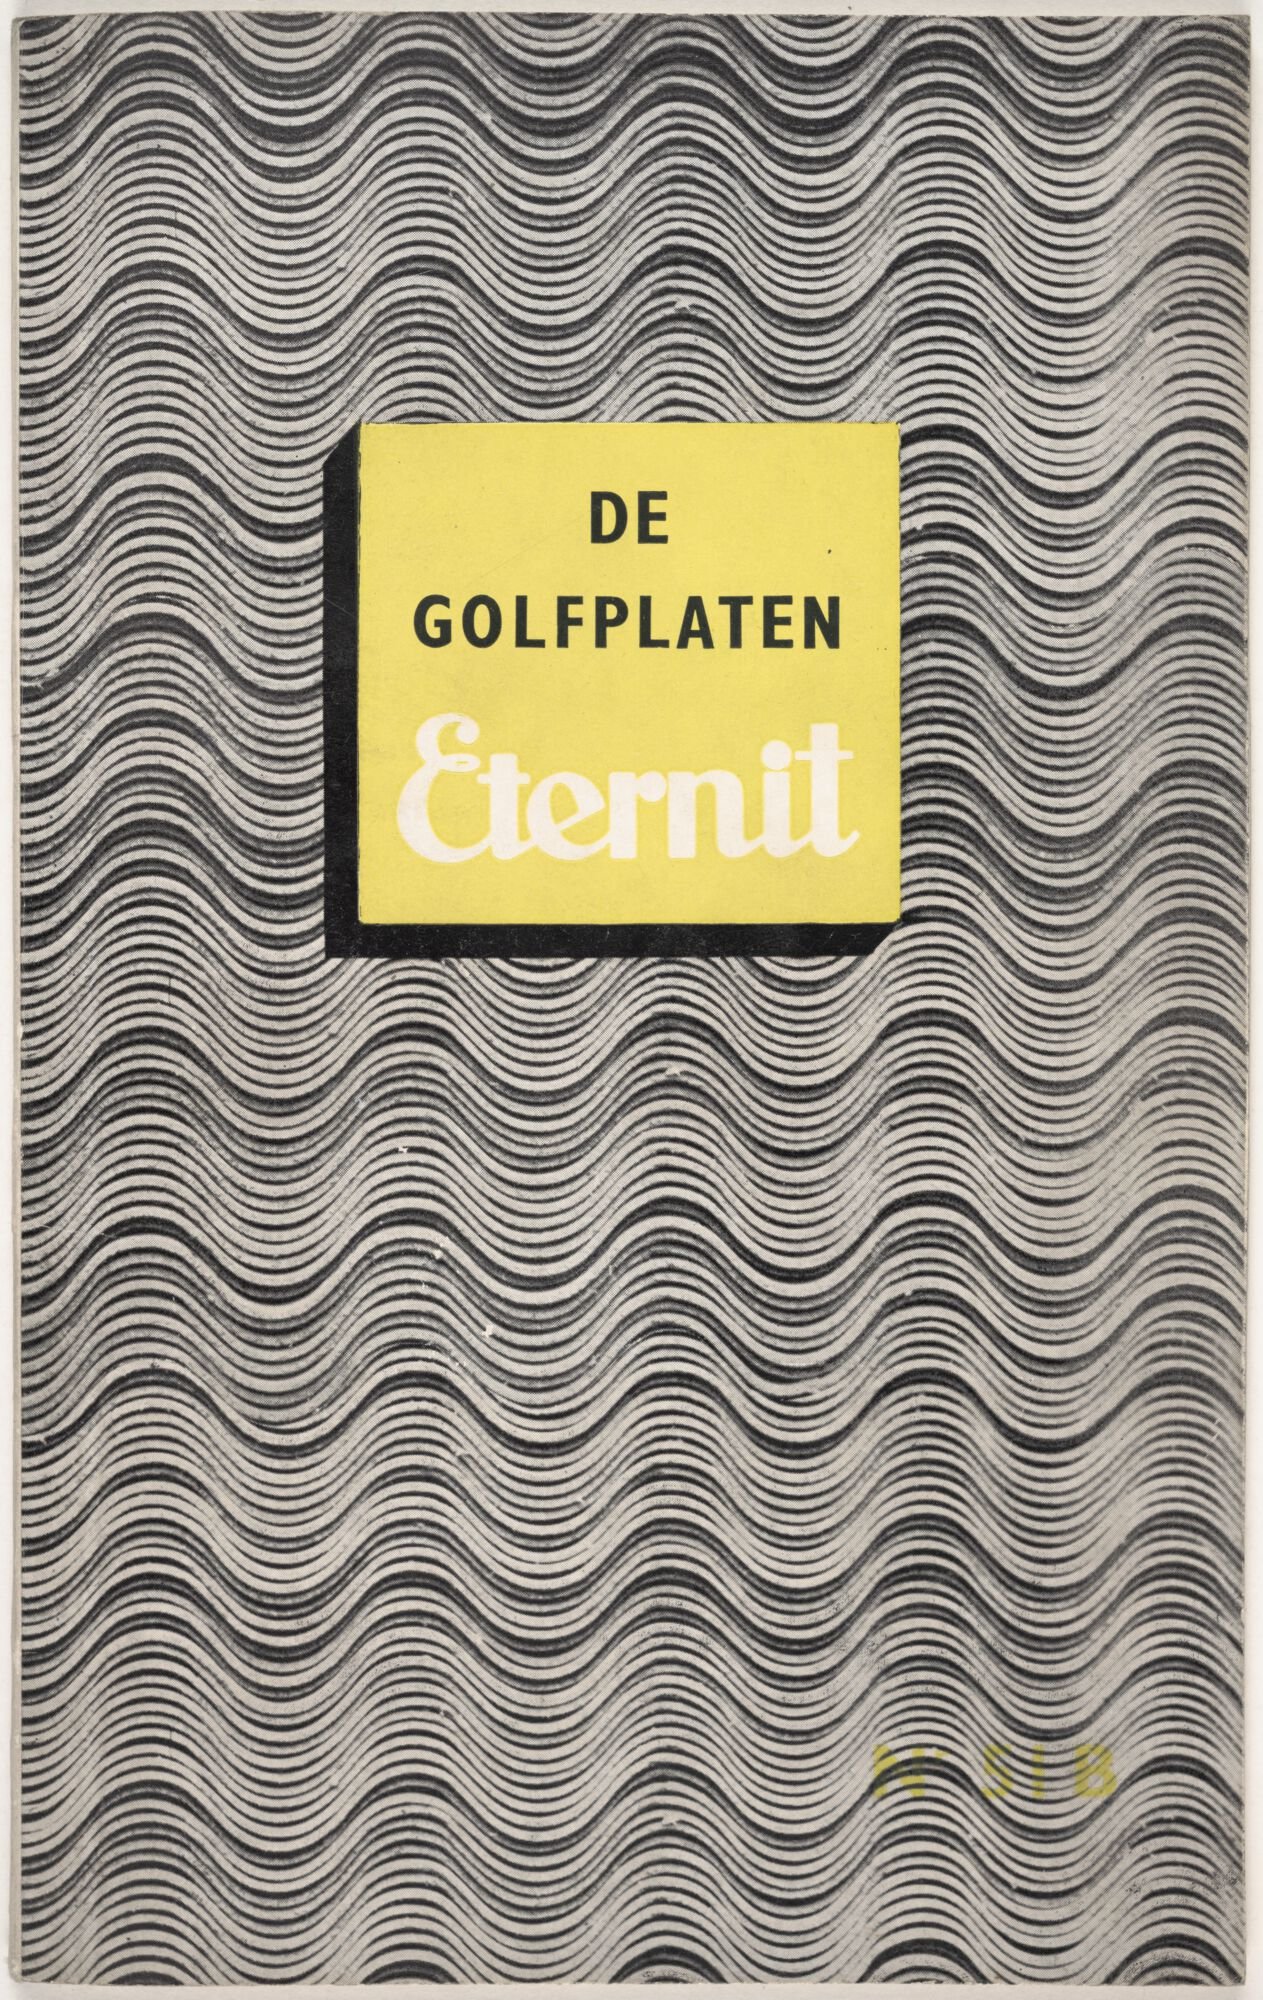 Informatiebrochure over golfplaten van het merk Eternit